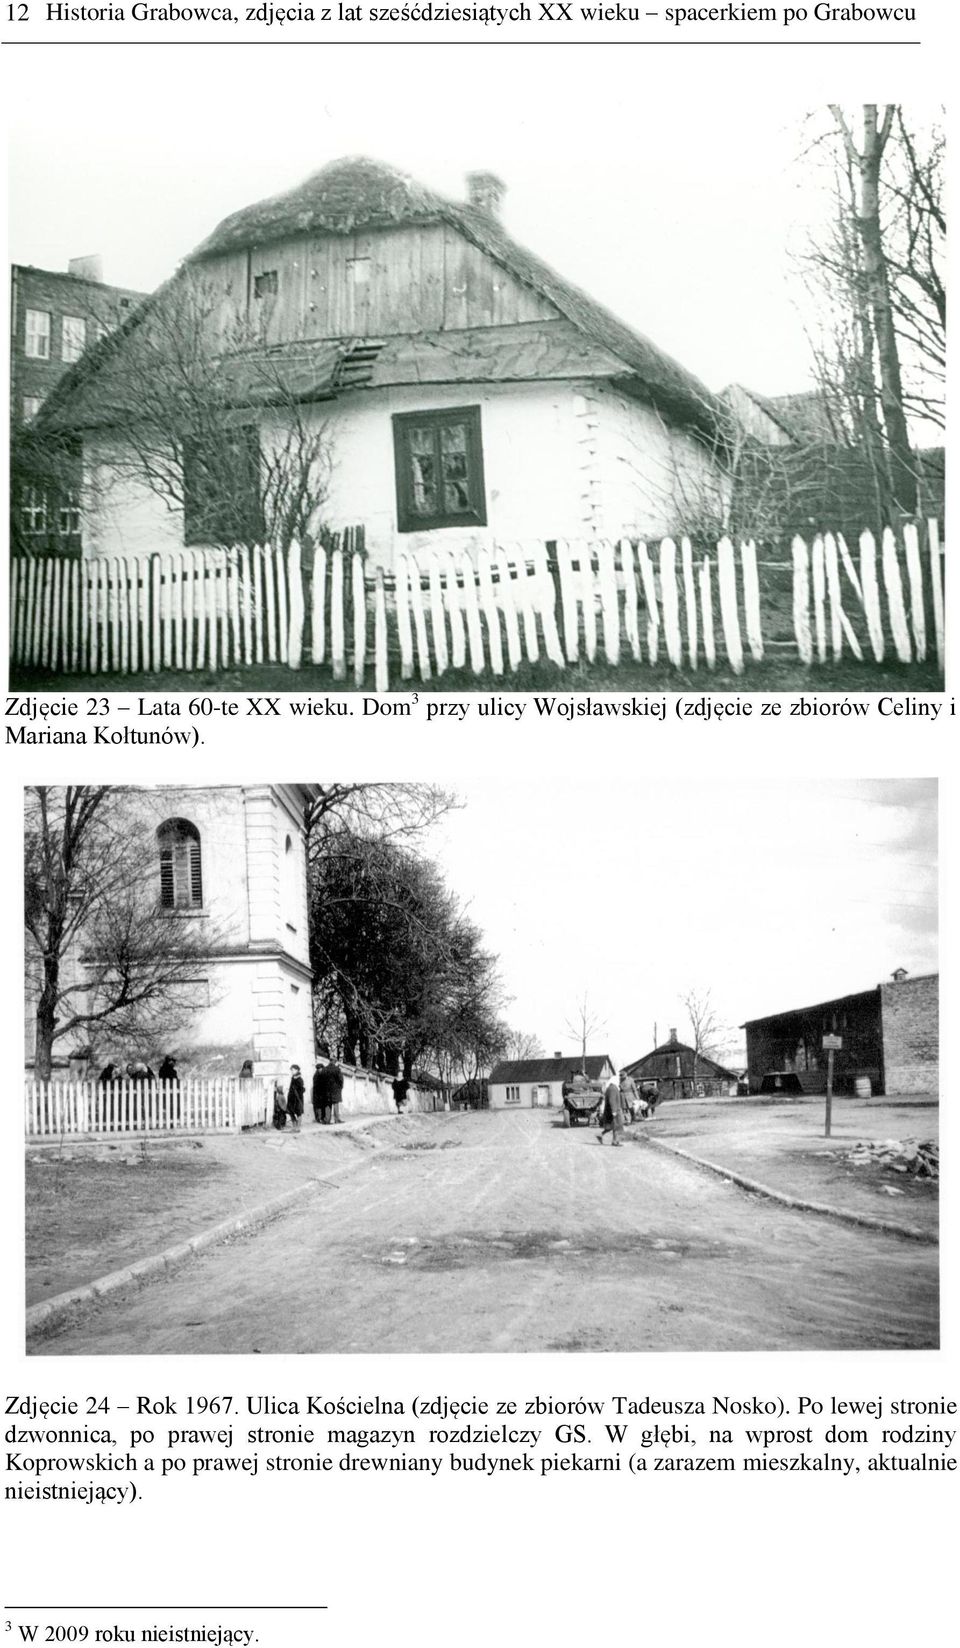 Ulica Kościelna (zdjęcie ze zbiorów Tadeusza Nosko). Po lewej stronie dzwonnica, po prawej stronie magazyn rozdzielczy GS.